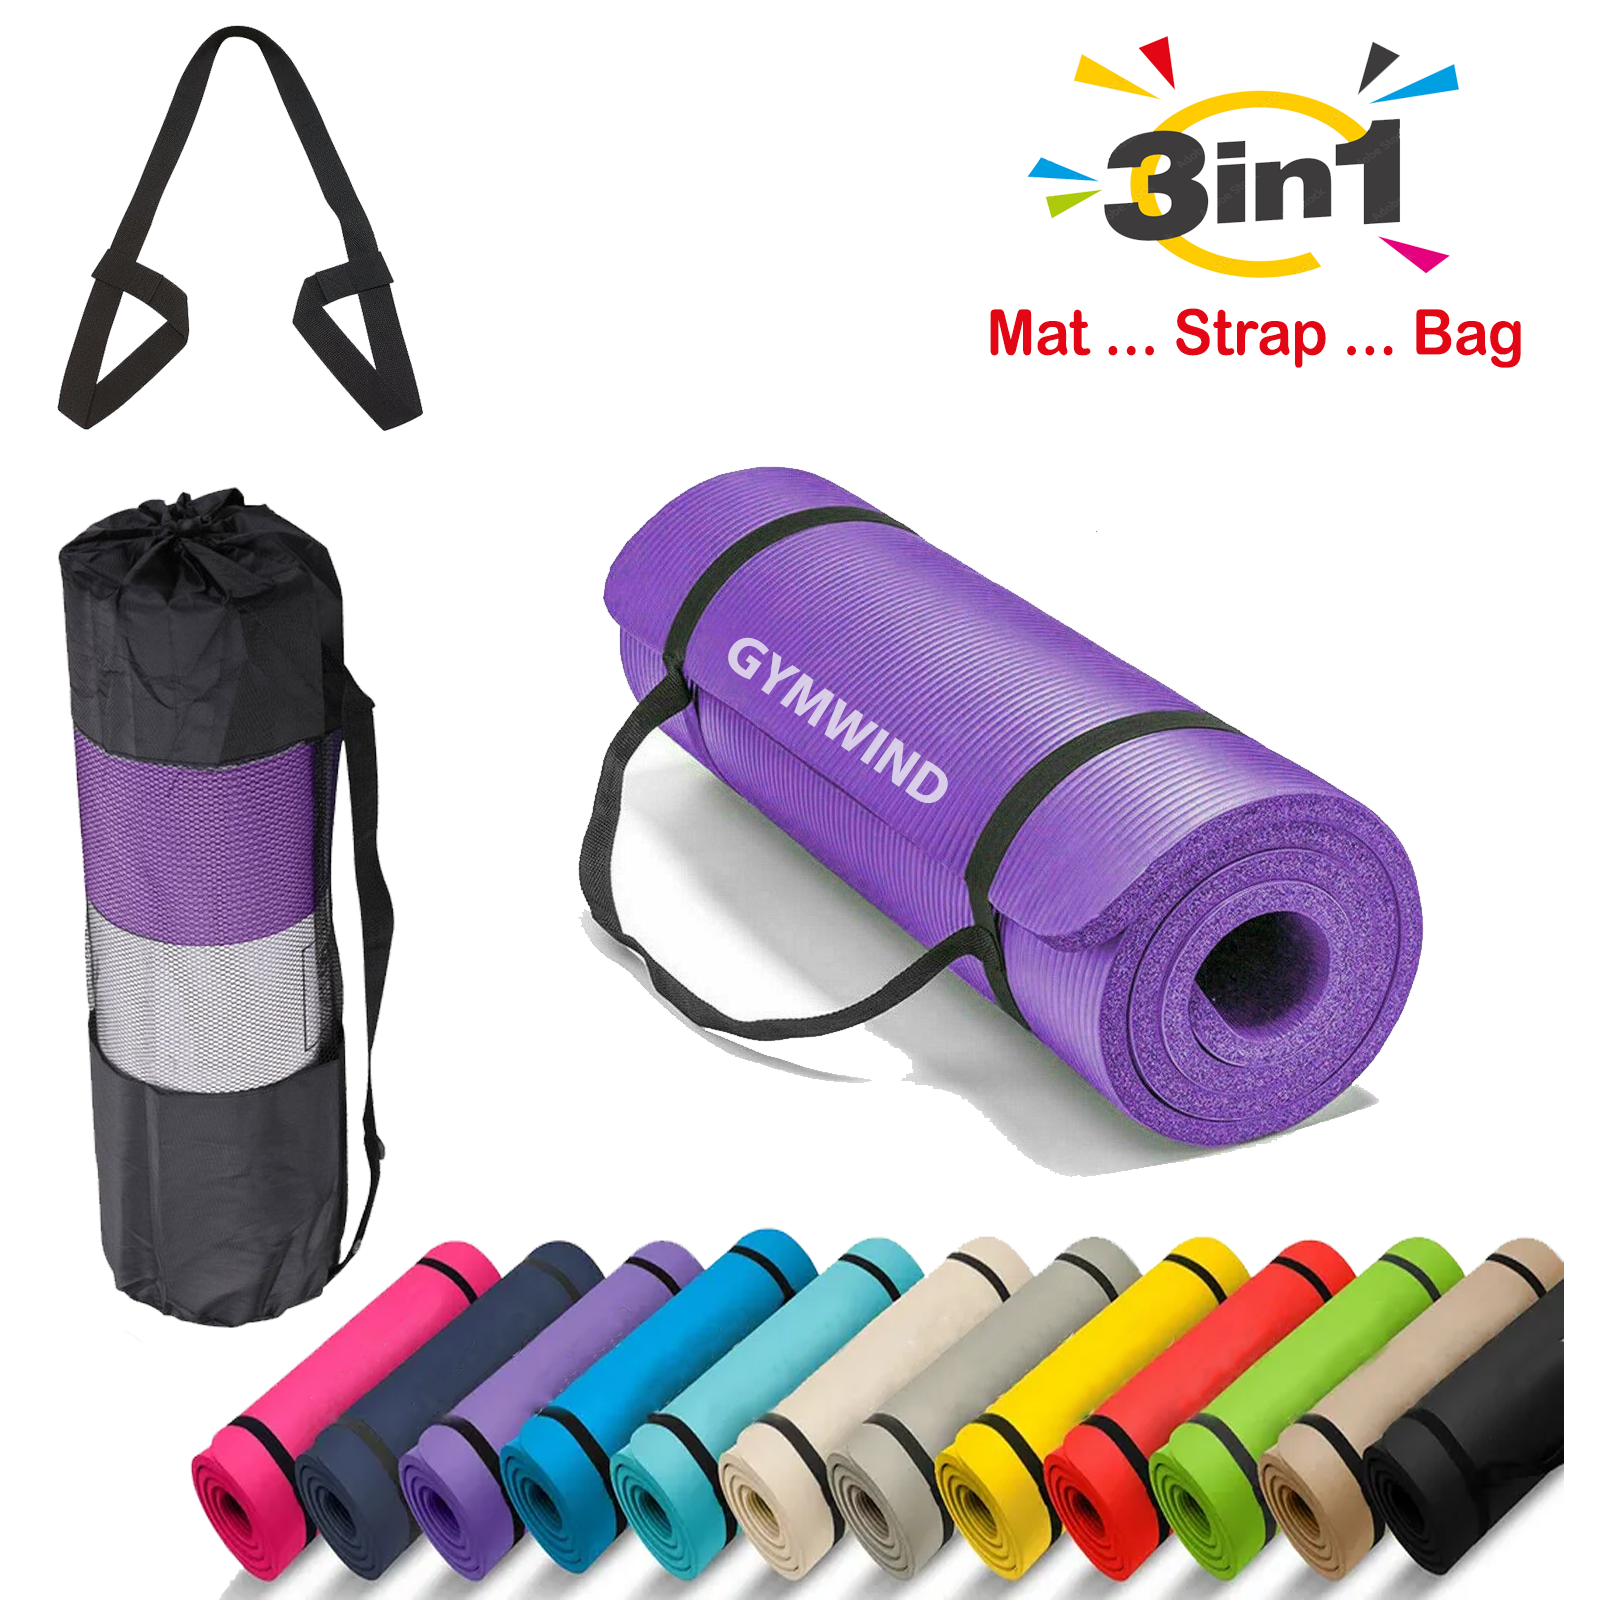 Yogarat MatPak Yoga Bags for XL Yoga Mats in Various Colors